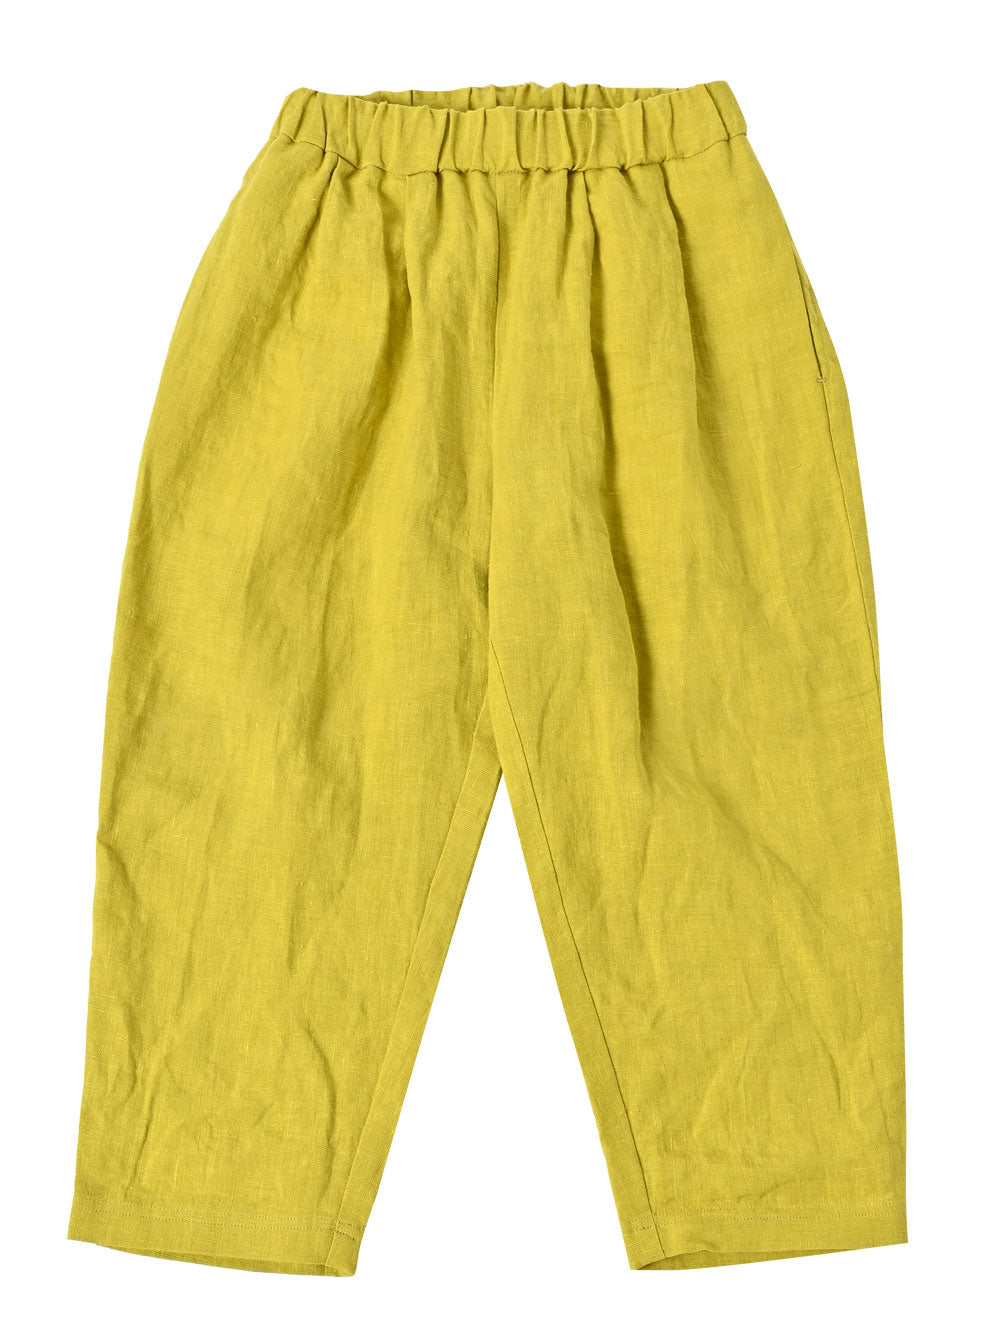 Saffron Yellow Pants